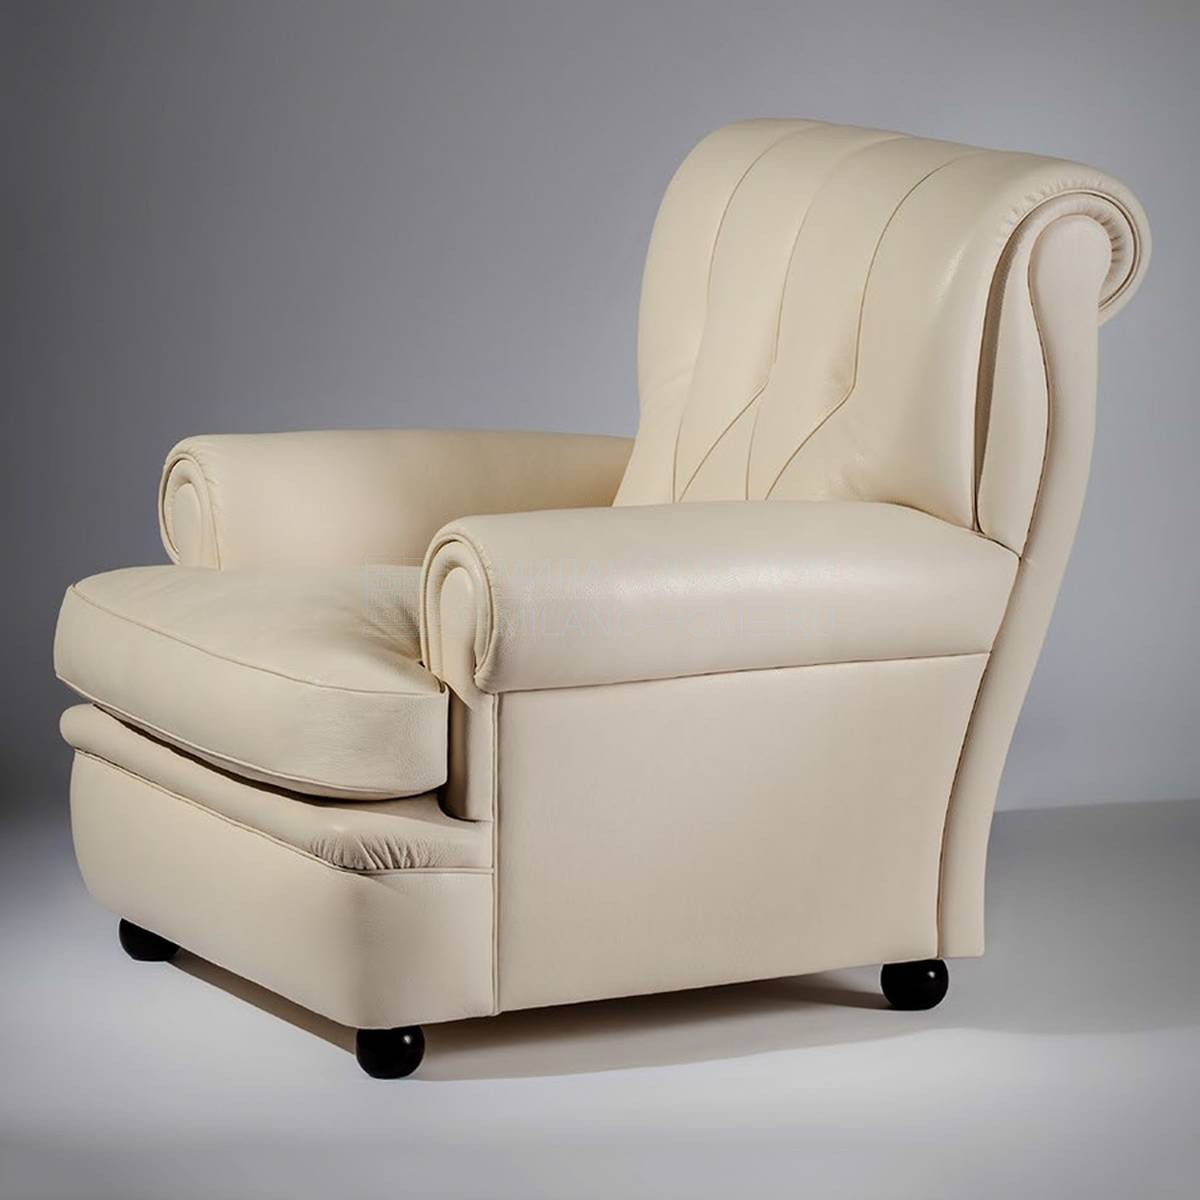 Кресло Prima 11901 из Италии фабрики VALDICHIENTI